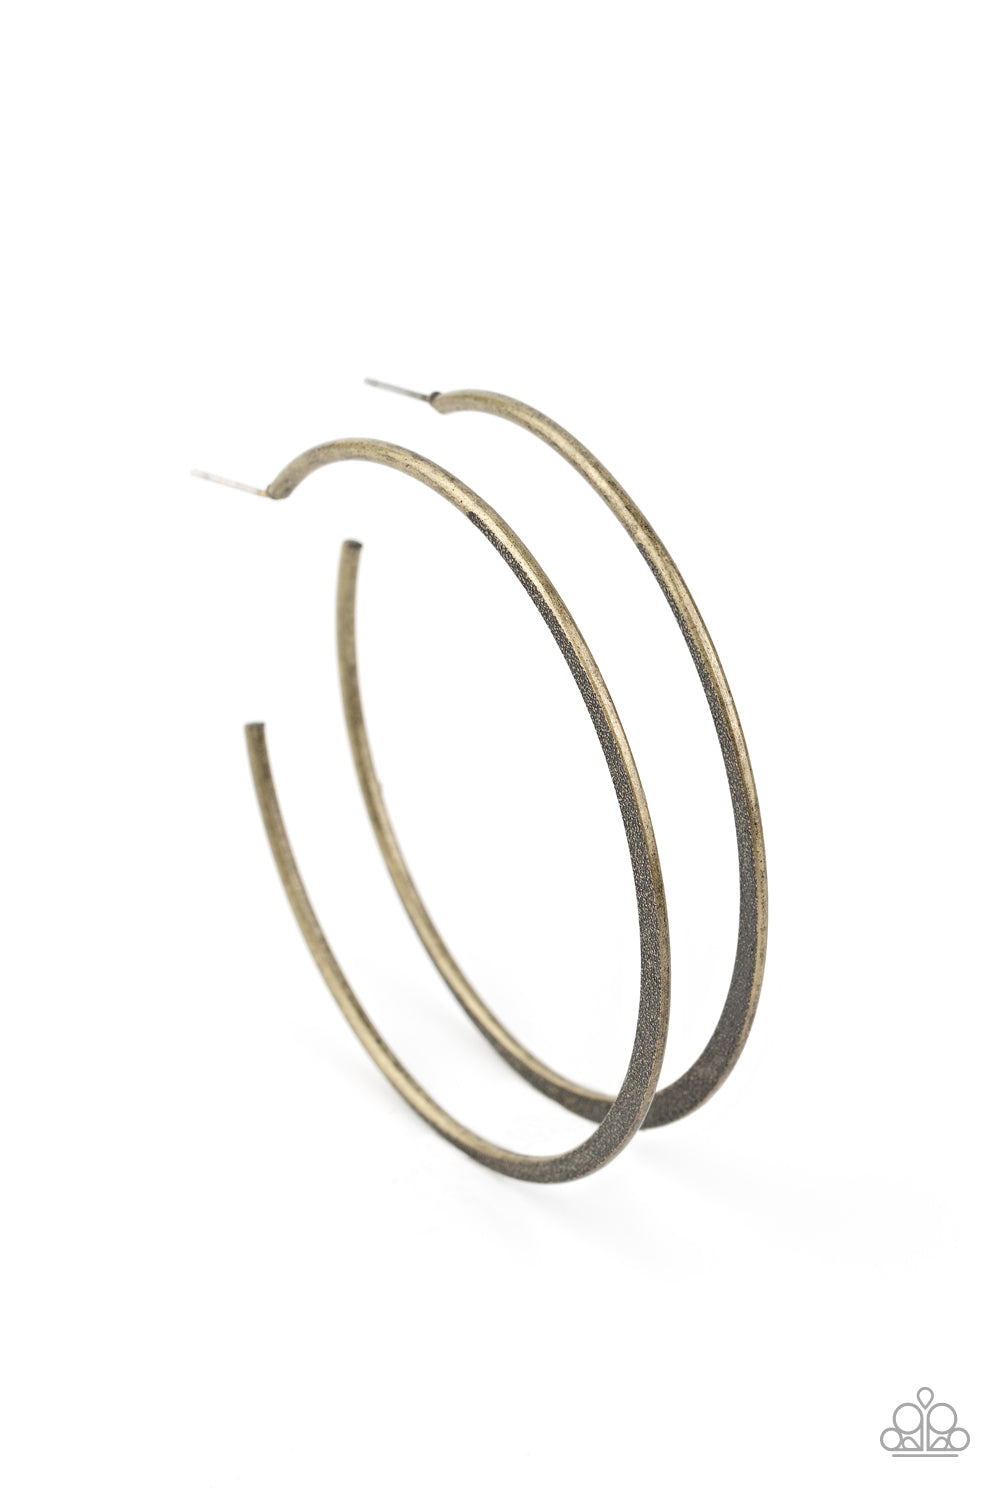 Flat Spin - Brass Earrings